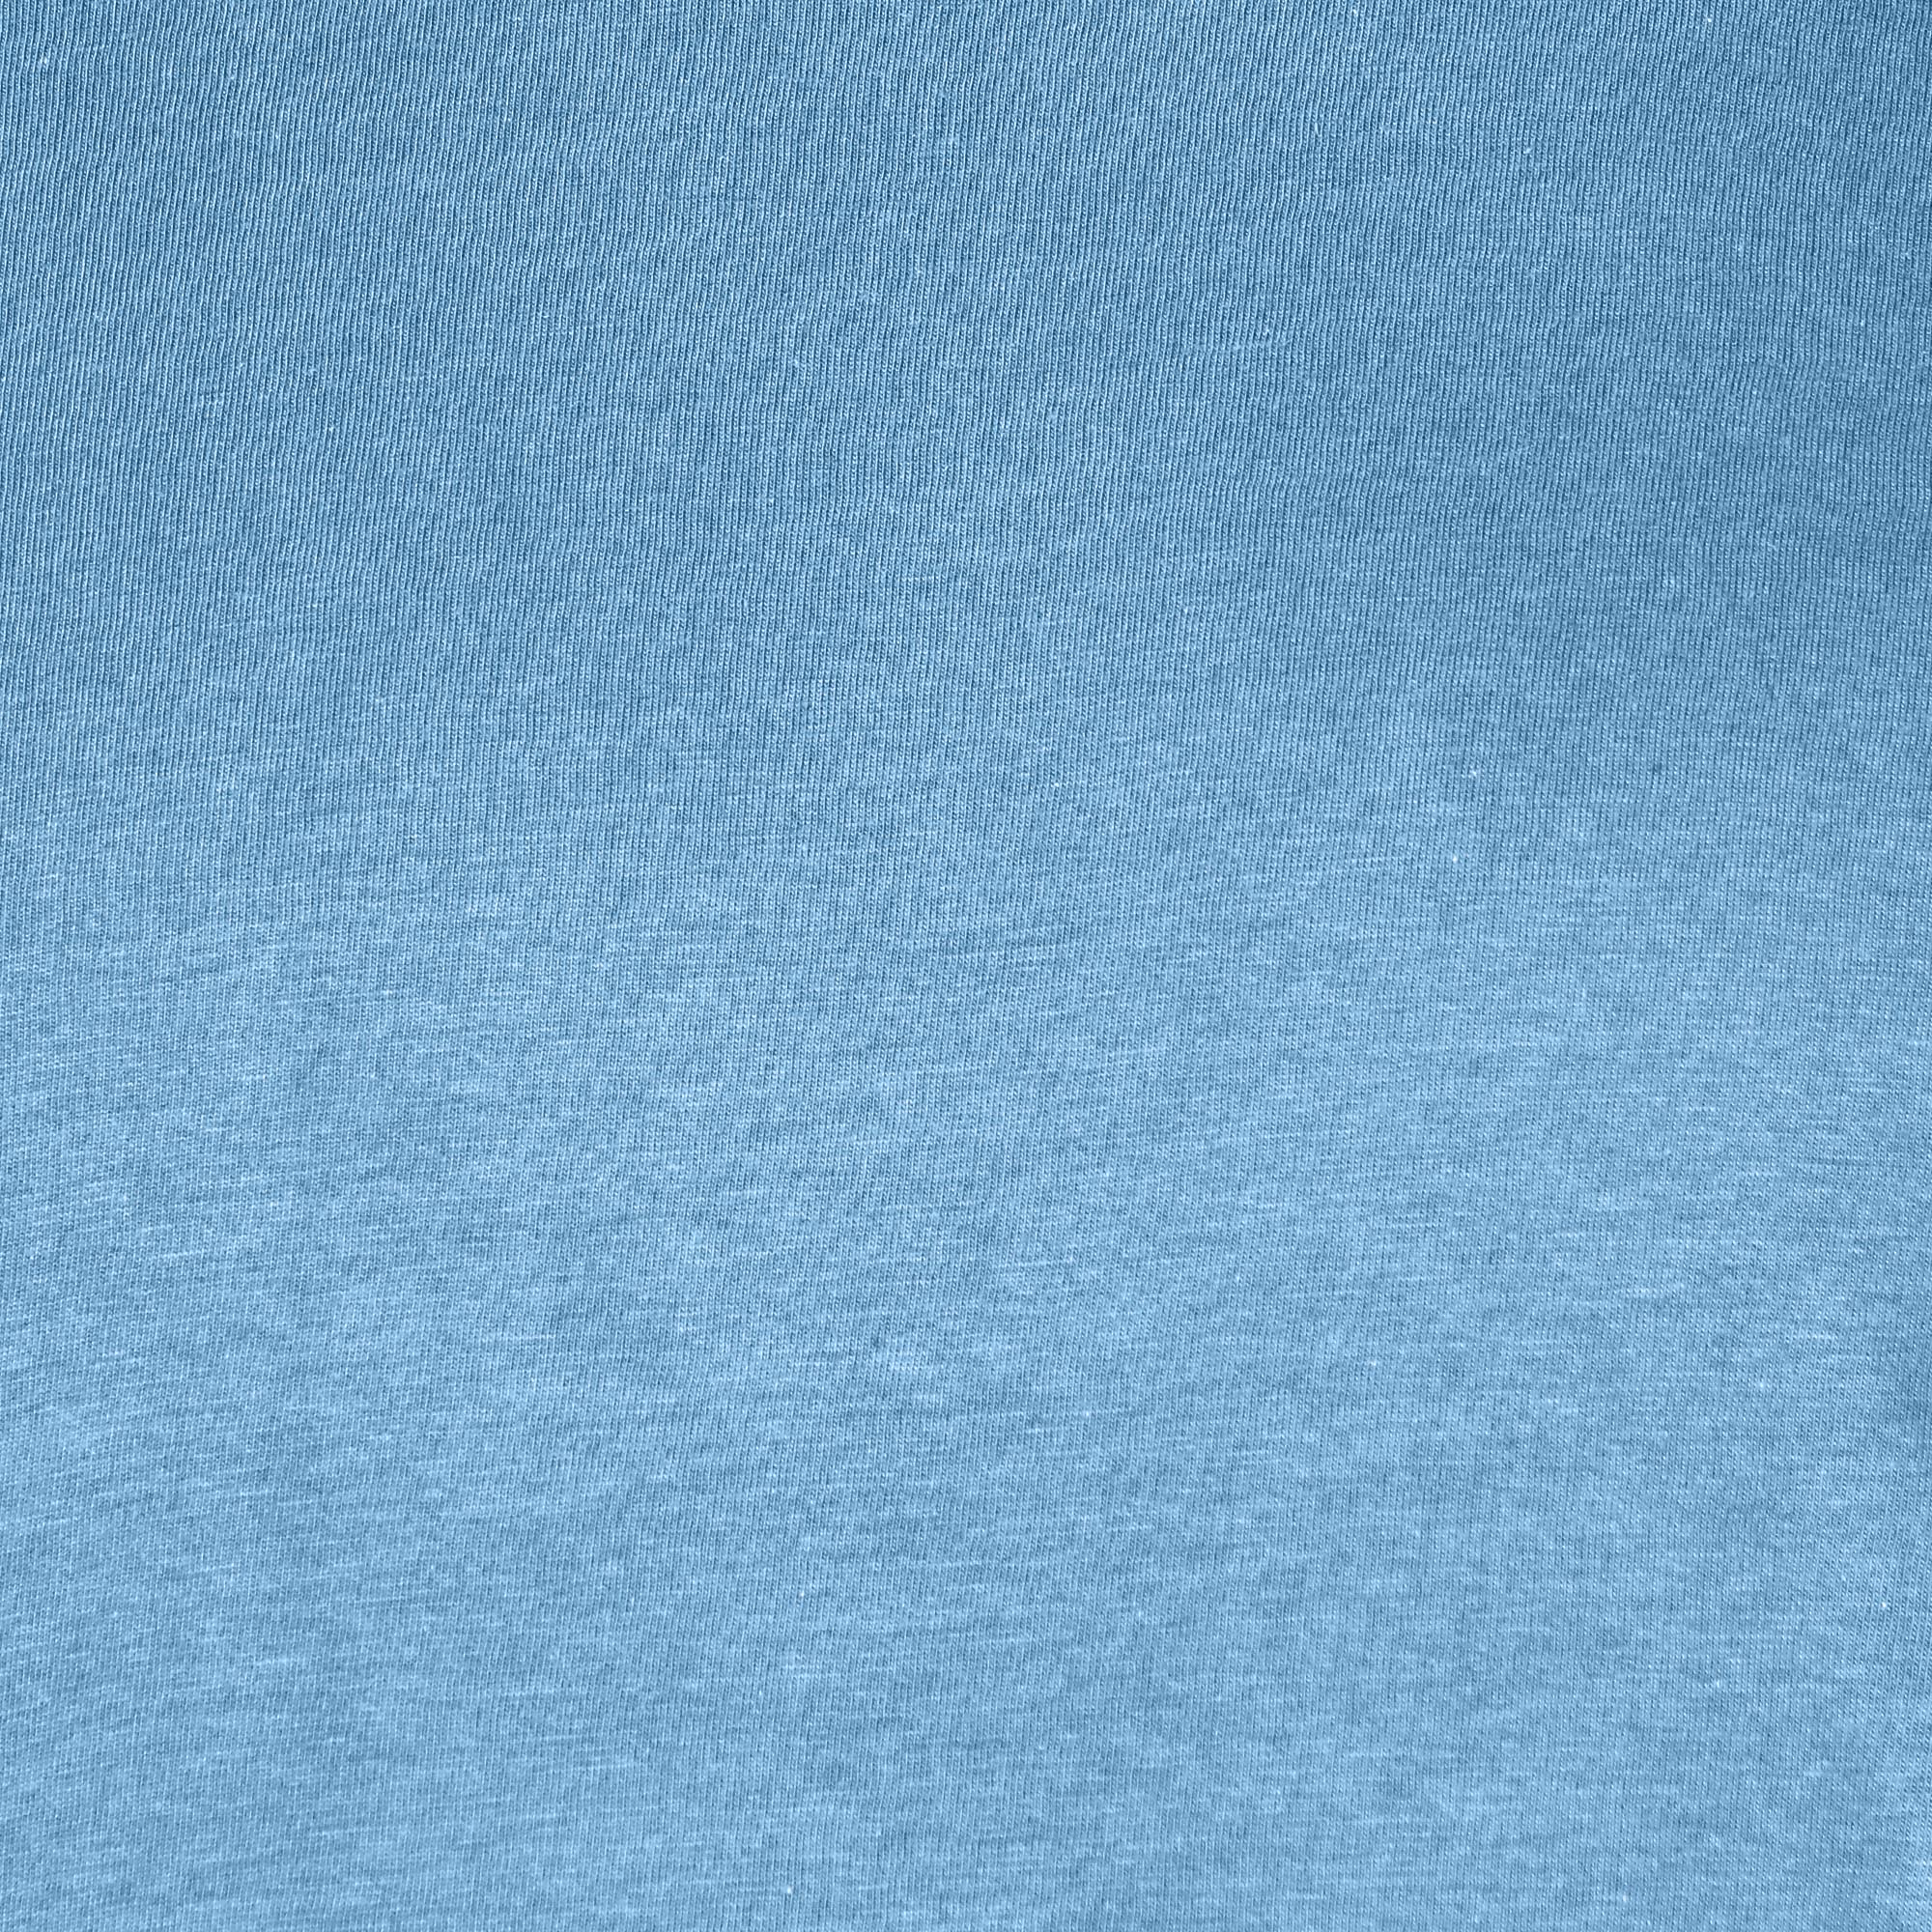 Мужская футболка Diva Teks голубая (DTD-03), цвет голубой, размер 46-48 - фото 5